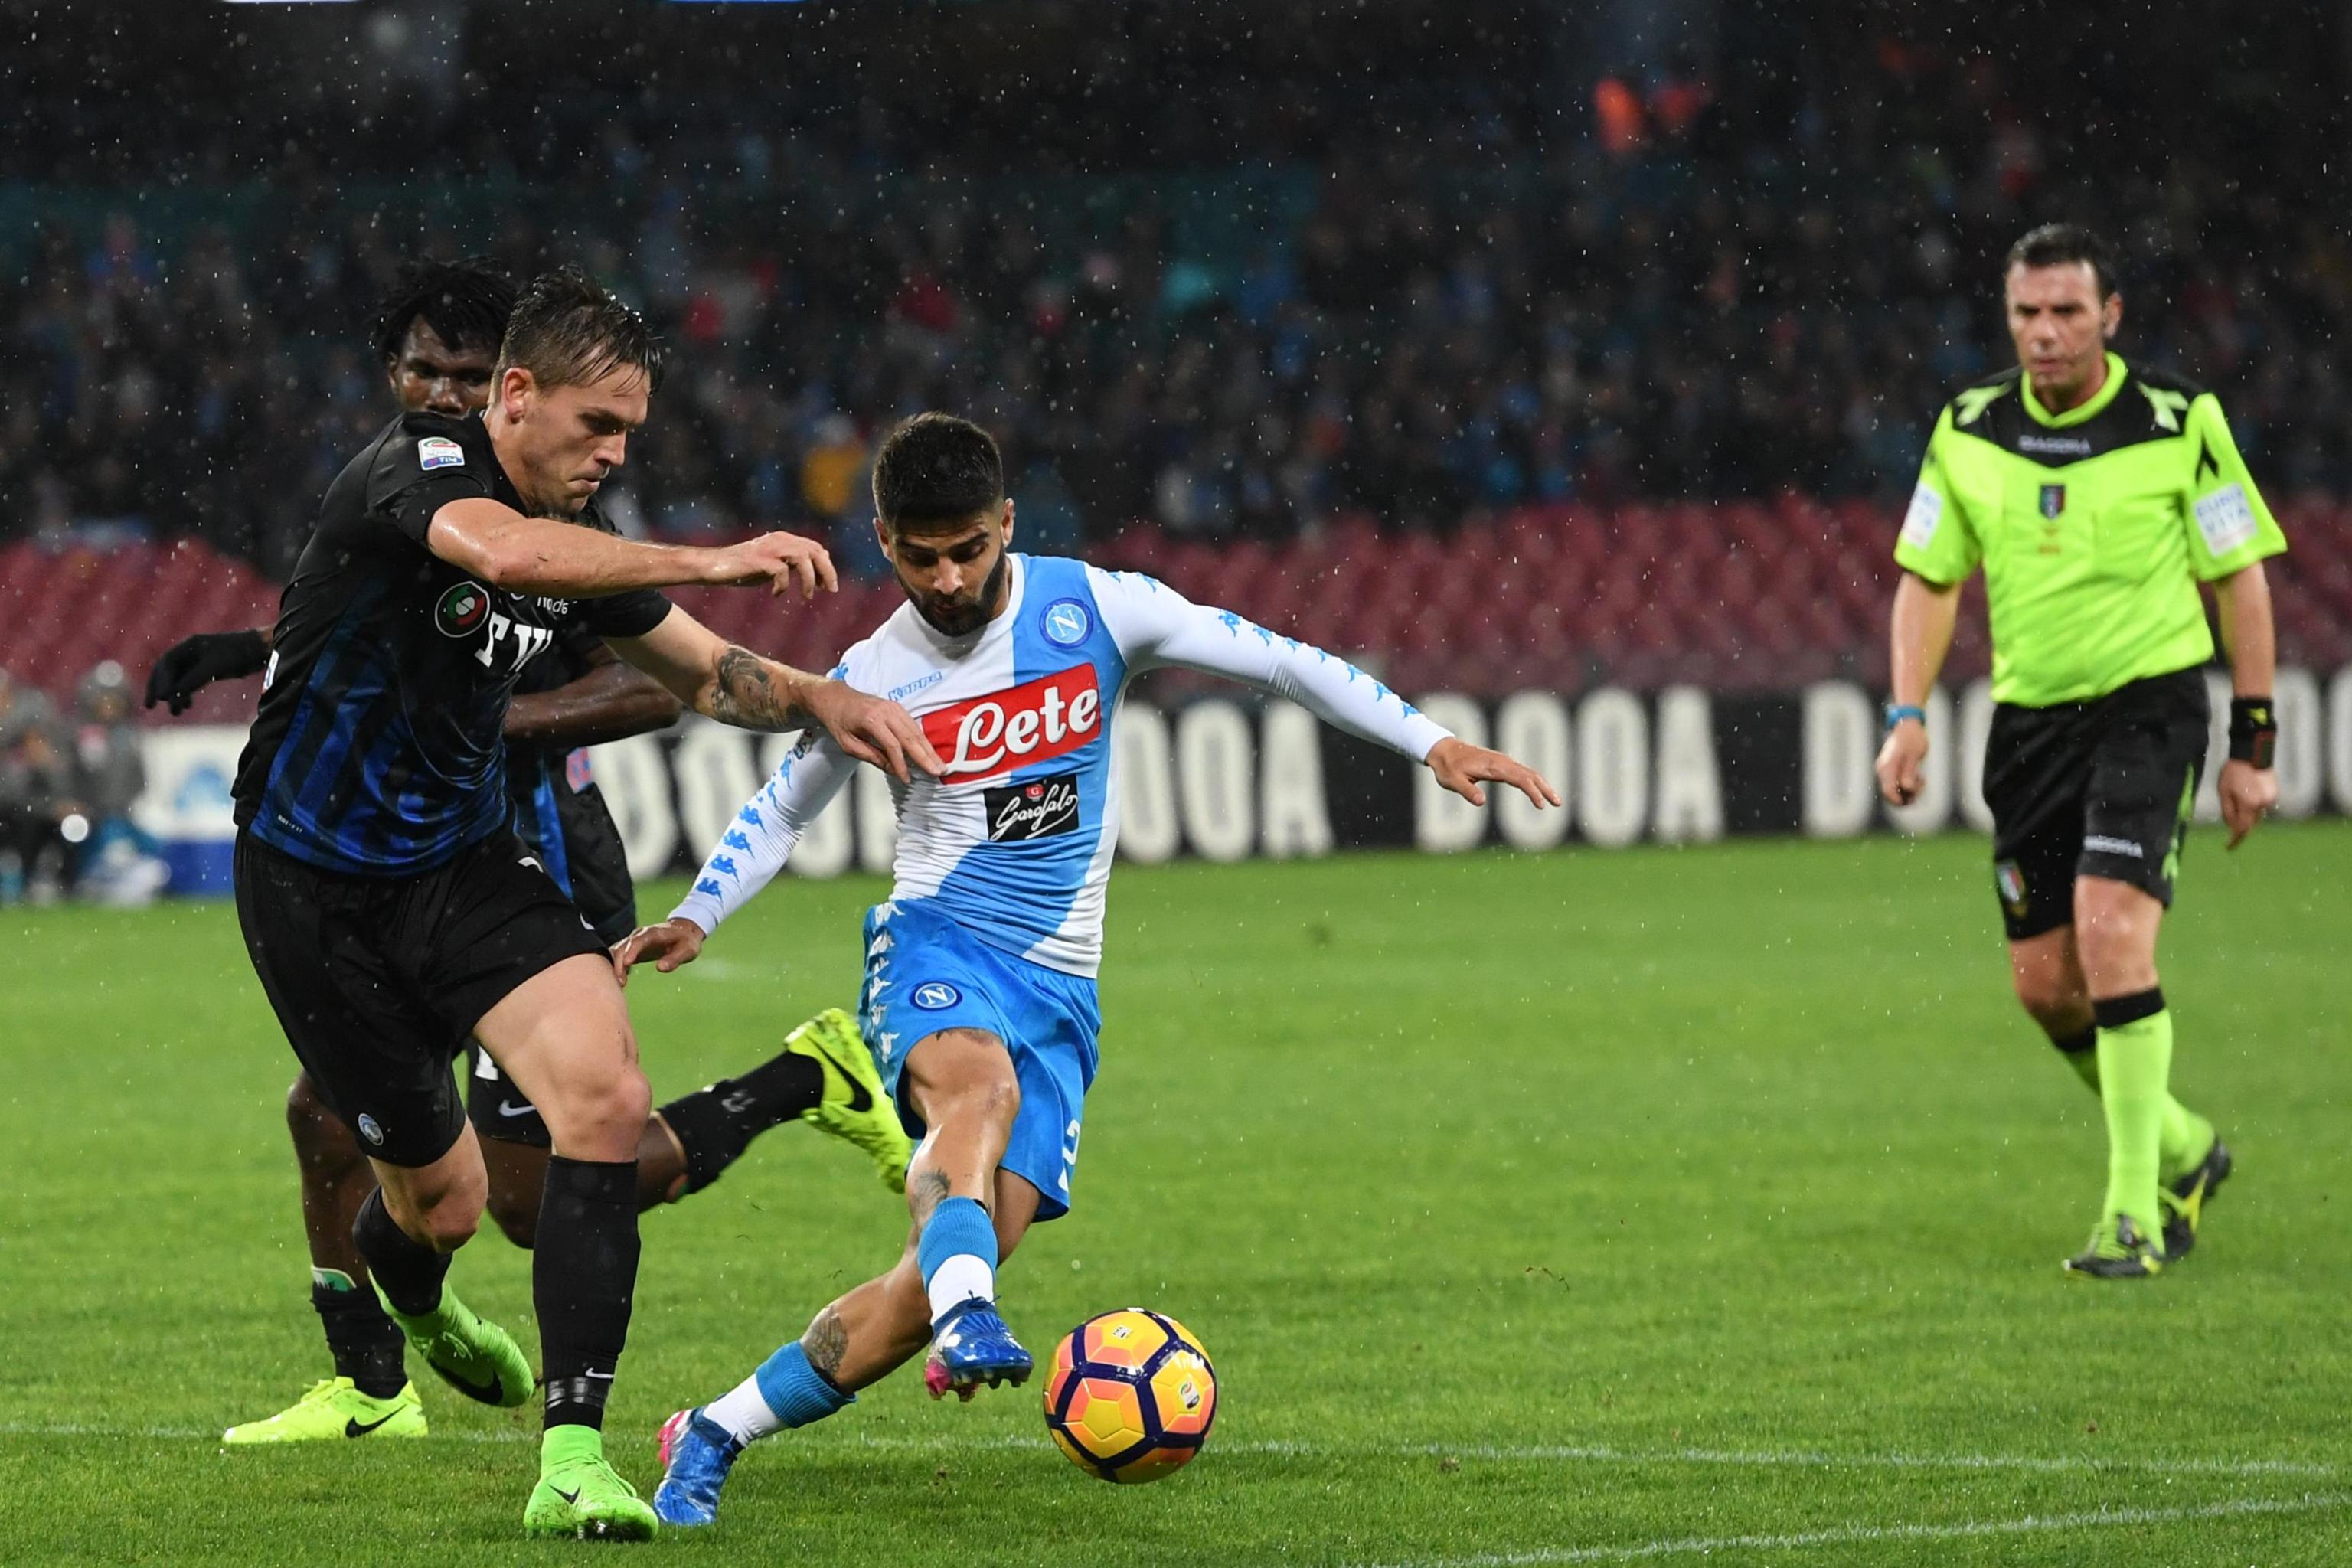 Serie positiva interrotta dopo 14 partite, Berisha unico imbattuto contro il Napoli